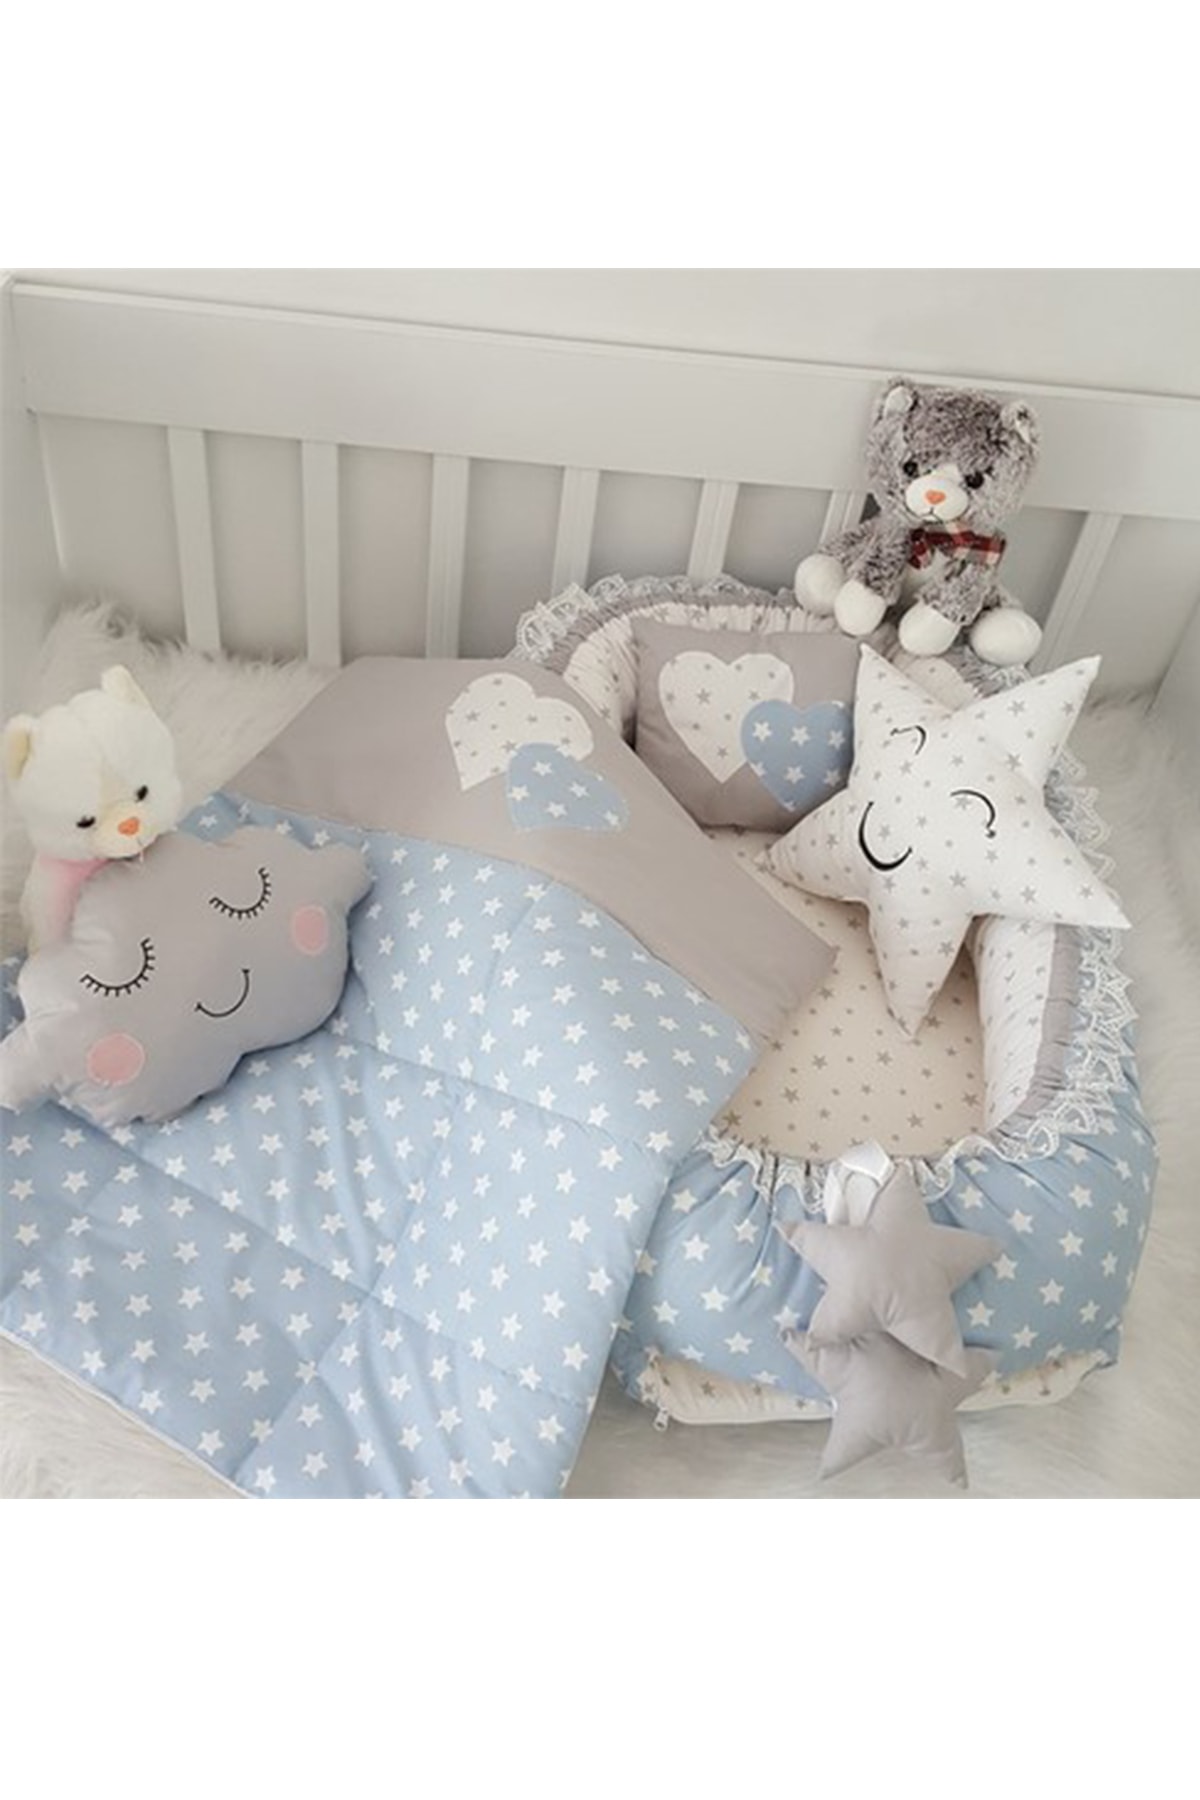 Jaju Baby Nest Mavi Yıldız Gri Kombin 5 Parça Lüx Jaju-babynest Anne Yanı Bebek Yatağı Set